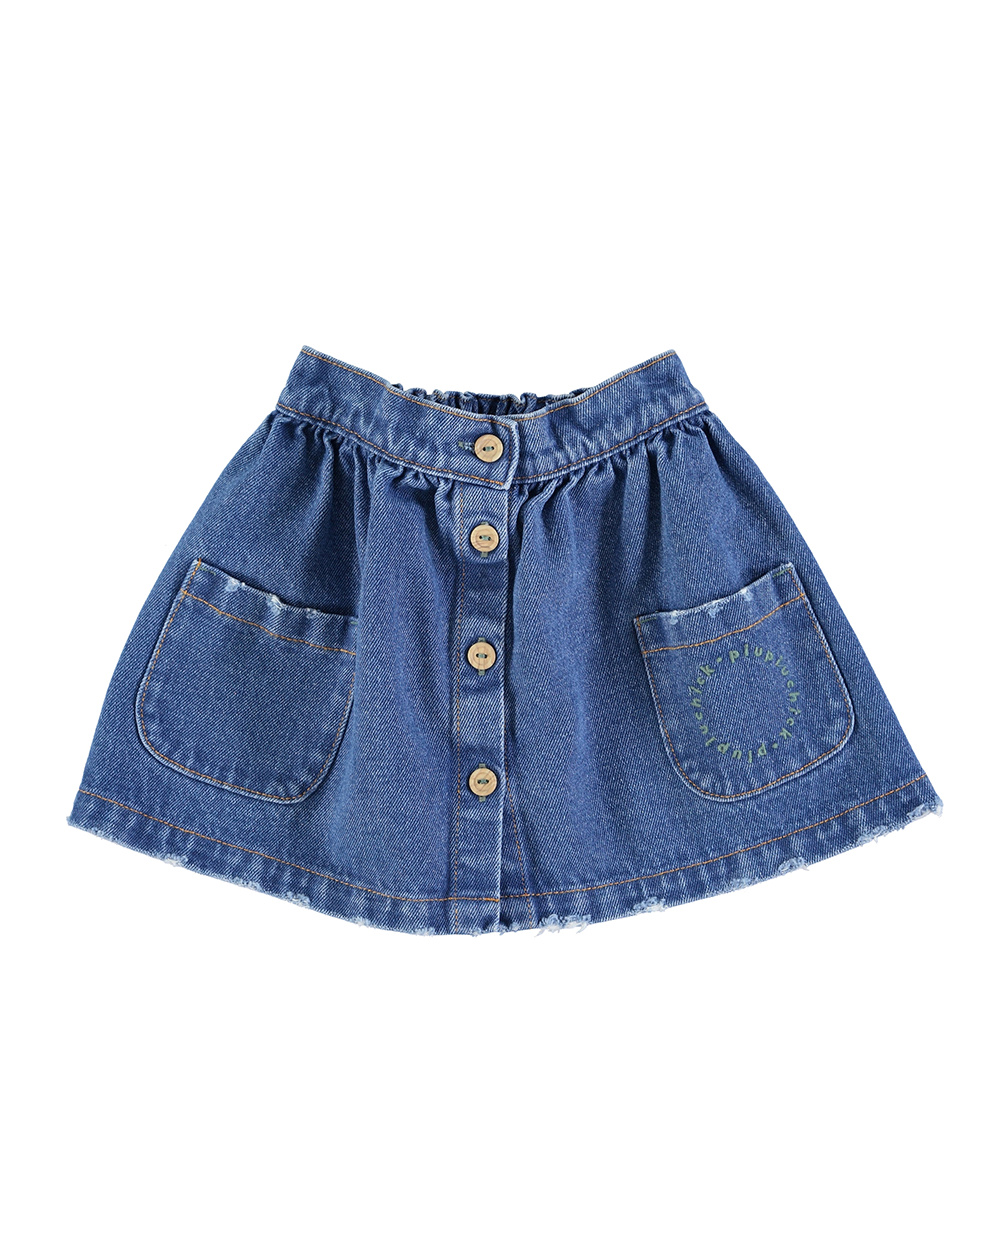 [ PIUPIUCHICK ] Short skirt w/ pockets | Washed navy denim [6Y]